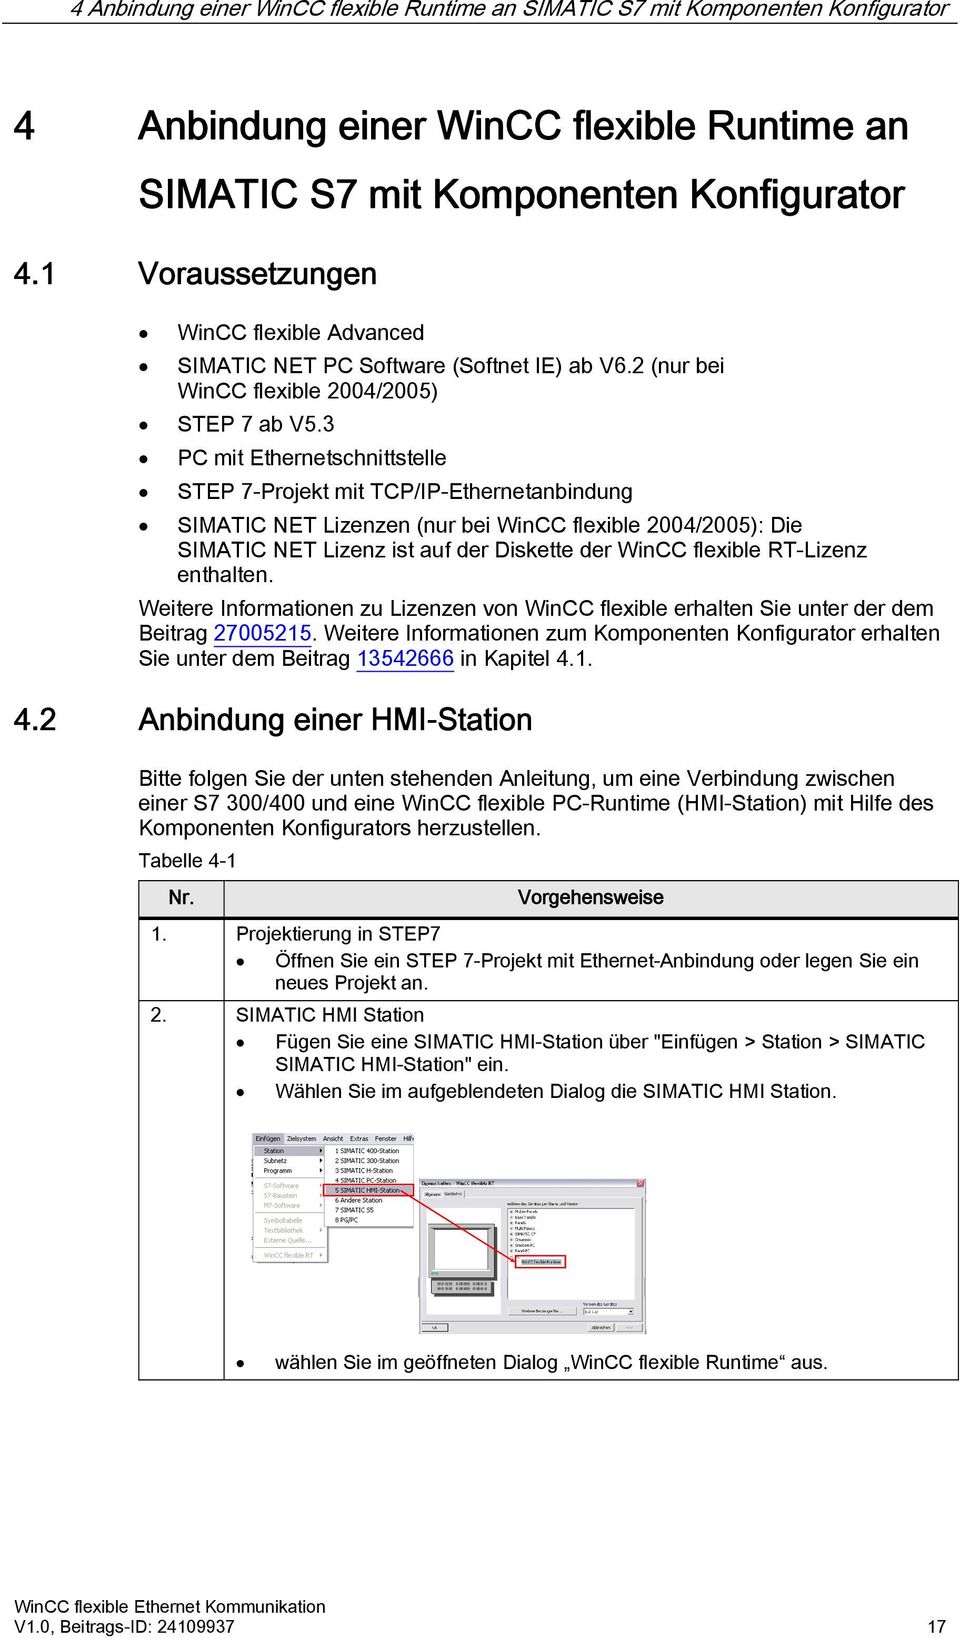 3 PC mit Ethernetschnittstelle STEP 7-Projekt mit TCP/IP-Ethernetanbindung SIMATIC NET Lizenzen (nur bei WinCC flexible 2004/2005): Die SIMATIC NET Lizenz ist auf der Diskette der WinCC flexible